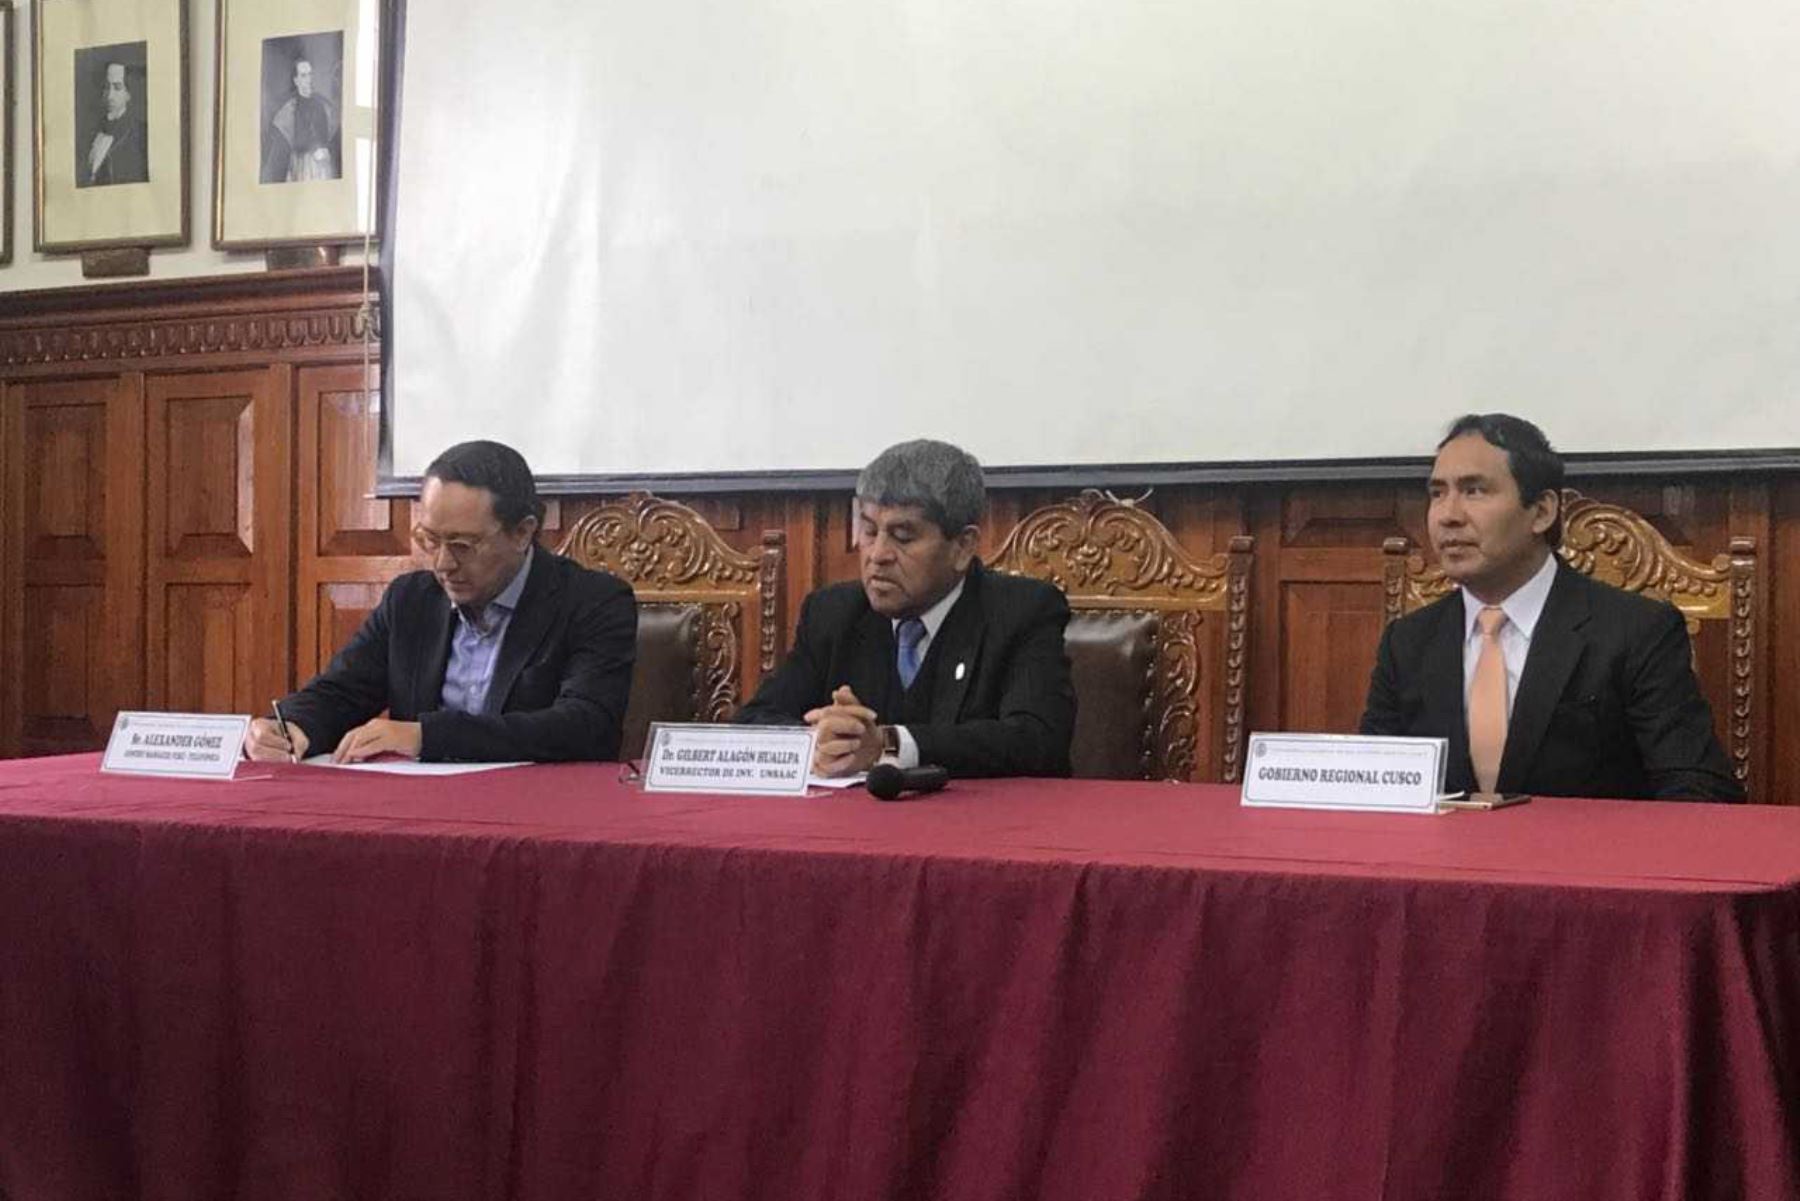 La Universidad Nacional San Antonio Abad del Cusco (Unsaac) suscribió un convenio con el objetivo de impulsar el desarrollo educativo y el emprendimiento digital en los jóvenes a través de la innovación y la tecnología.